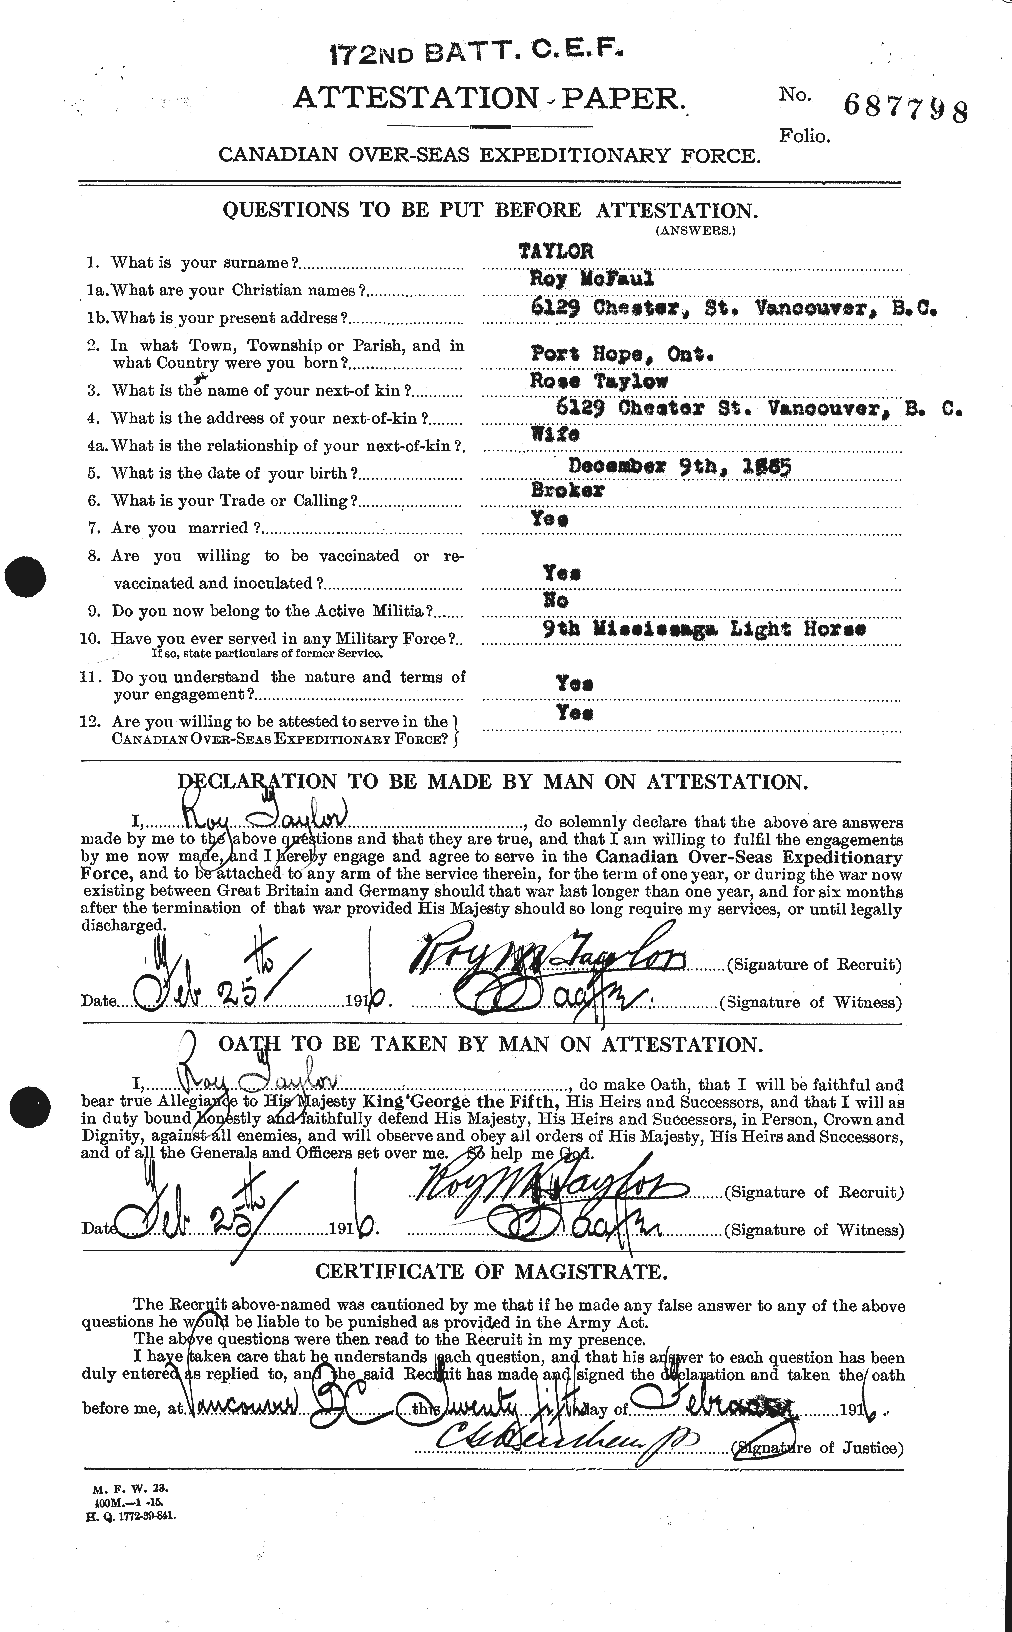 Dossiers du Personnel de la Première Guerre mondiale - CEC 627533a